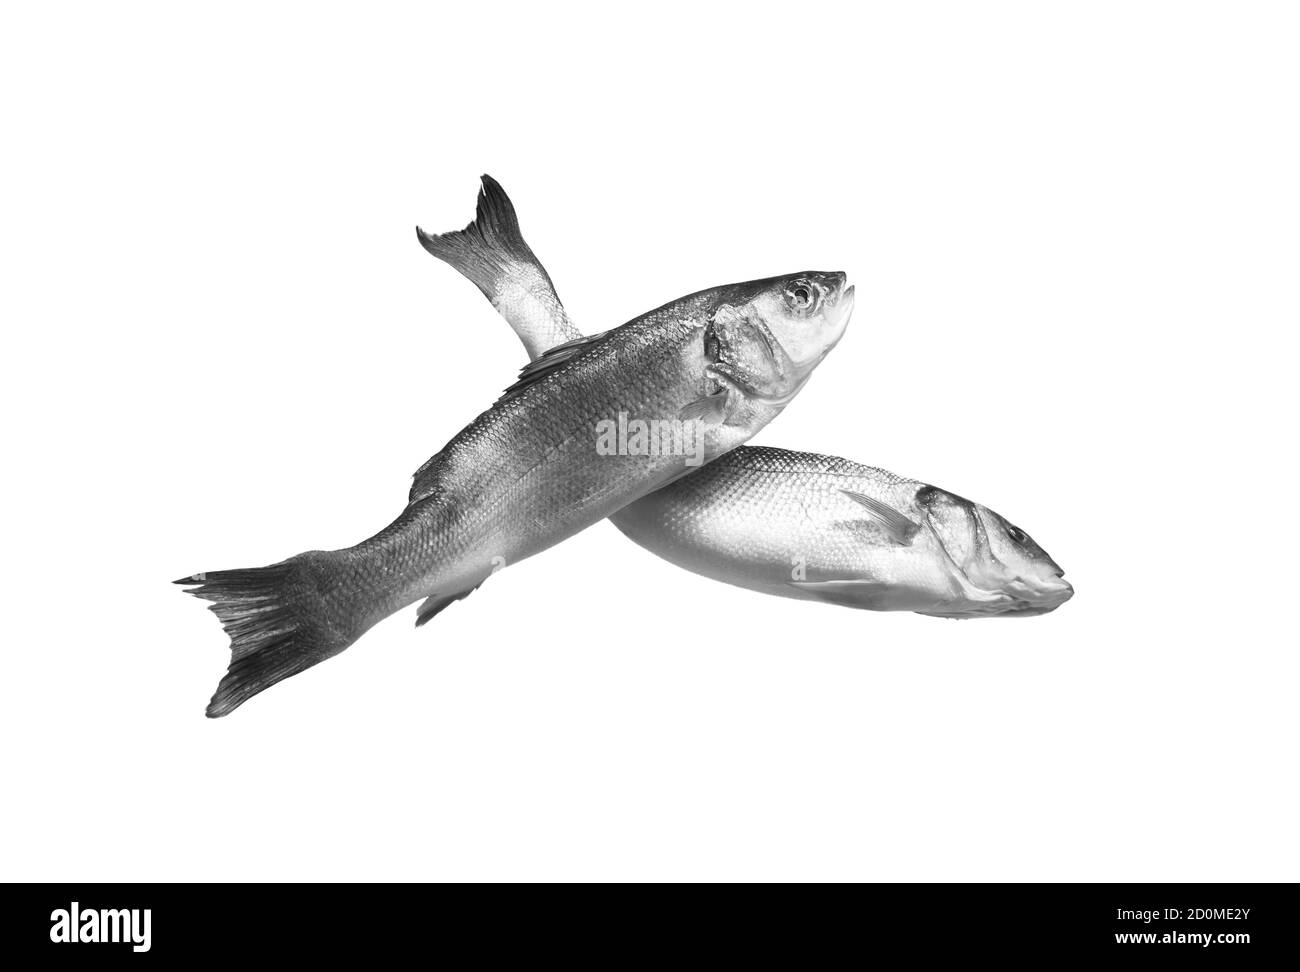 Deux poissons de mer crus isoaltés sur fond blanc Banque D'Images